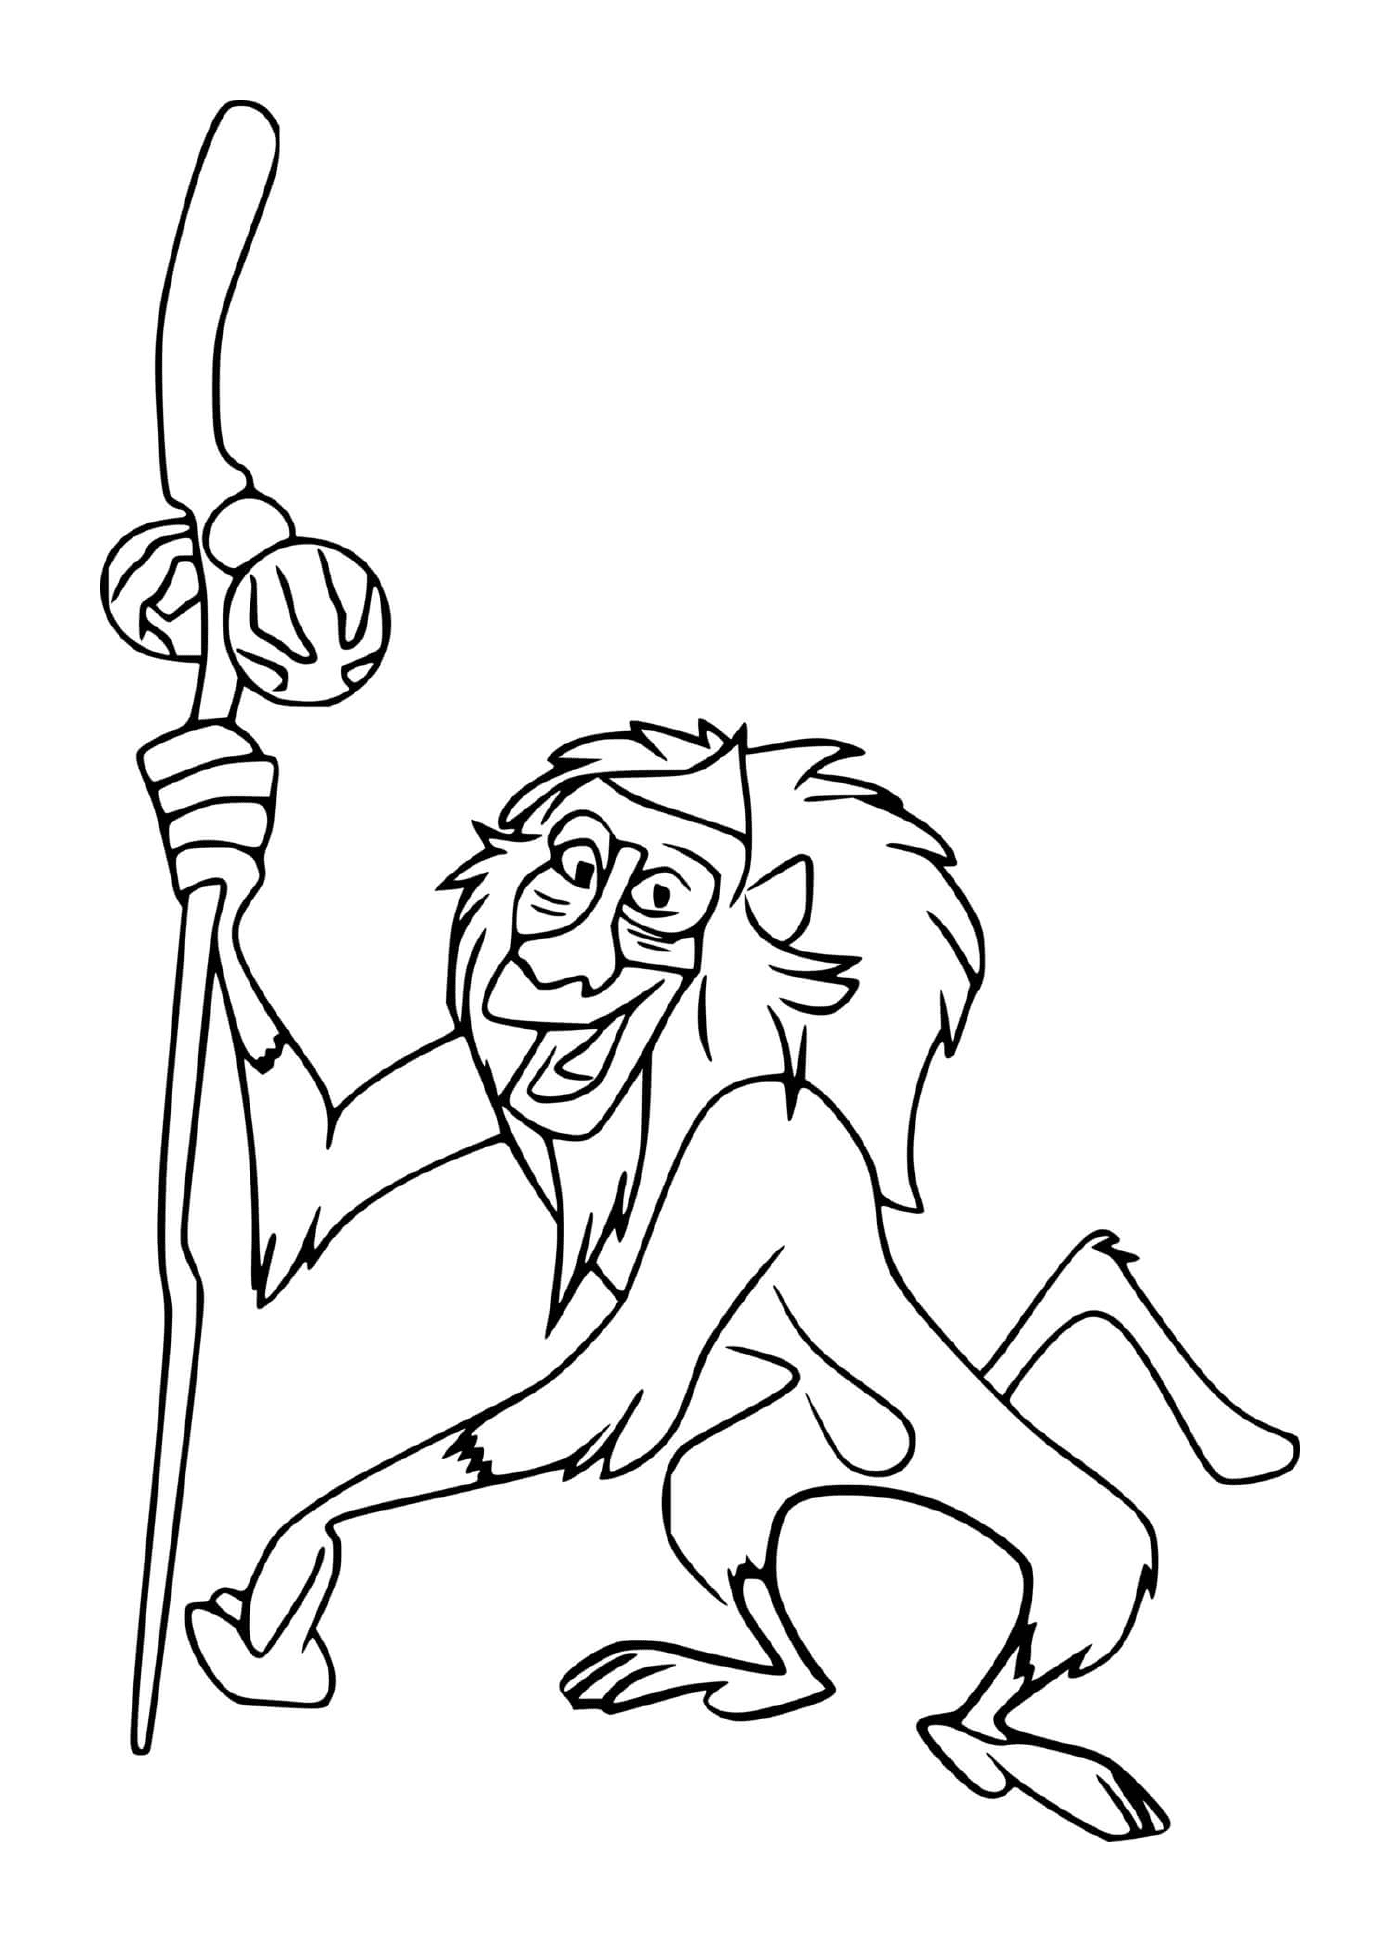  Rafiki, the wise baboon 